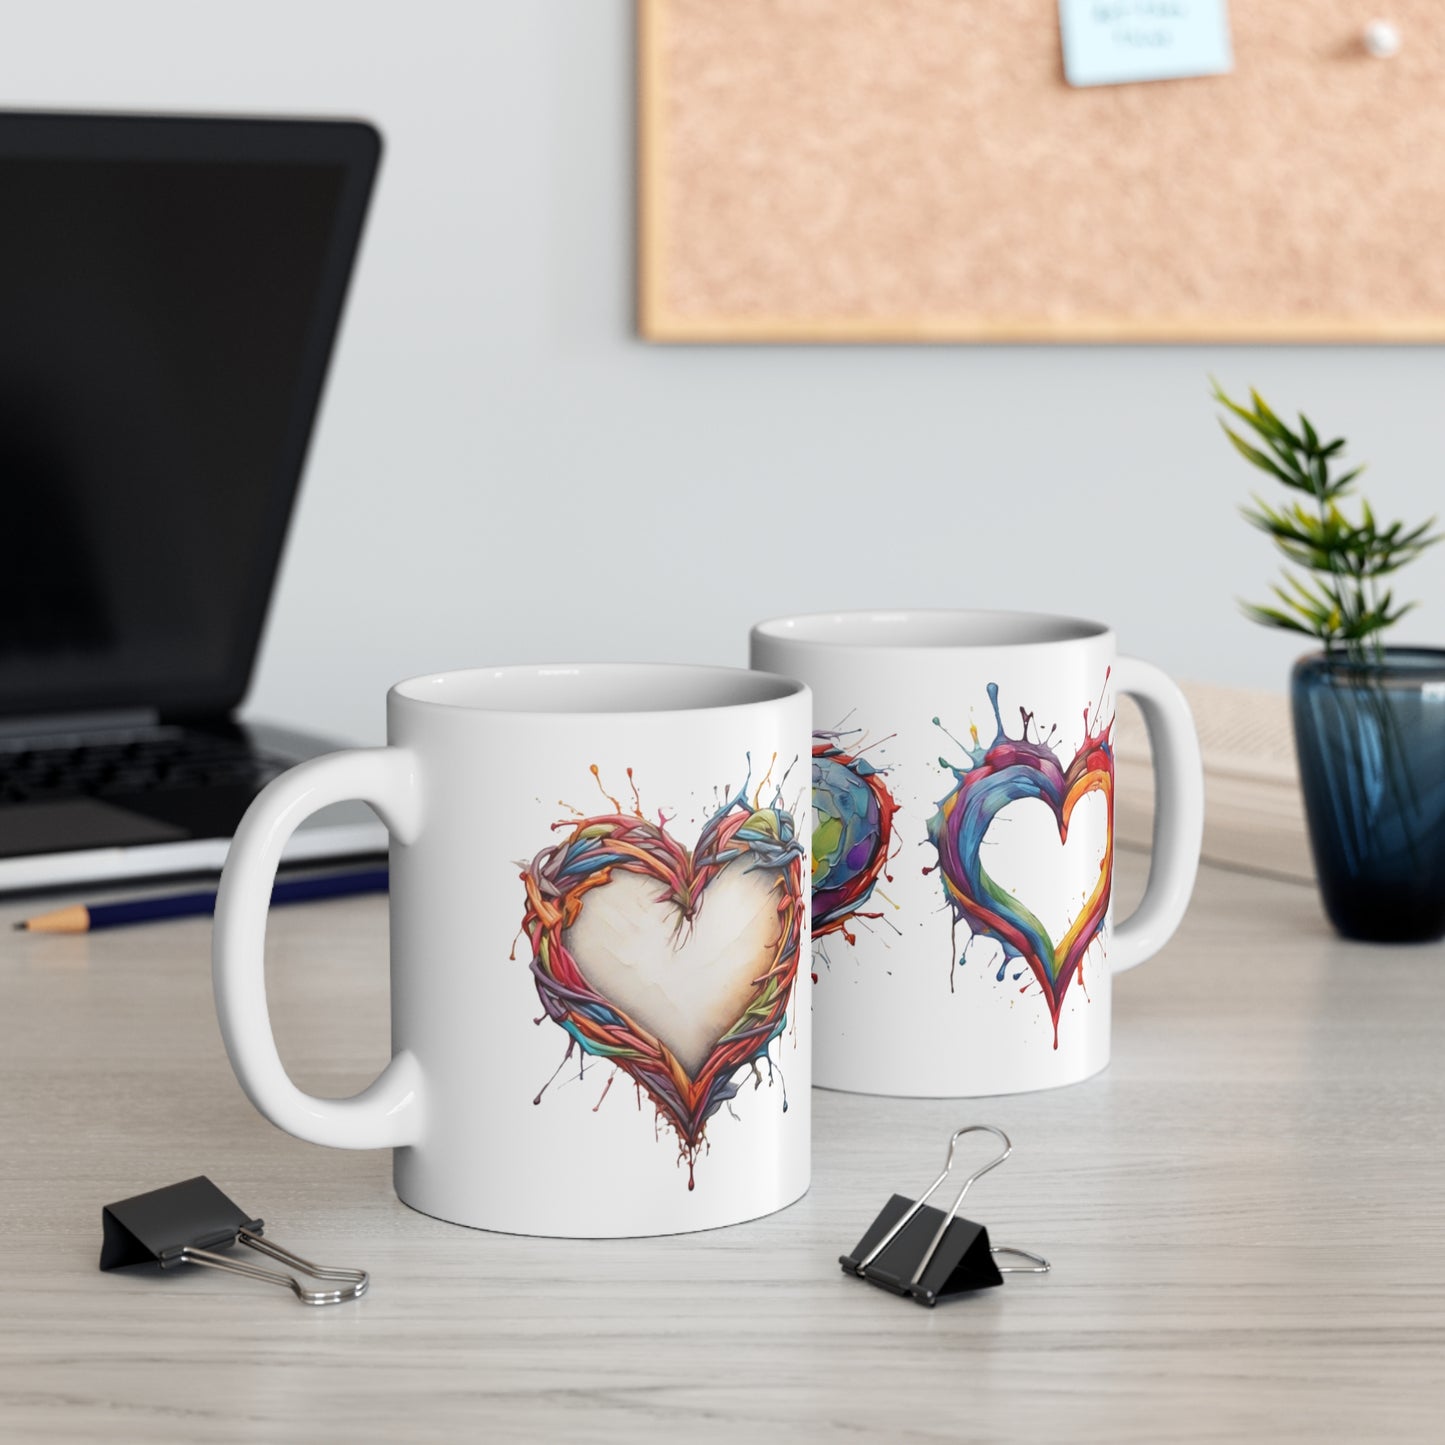 Colourful Love Hearts Mug - Ceramic Coffee Mug 11oz